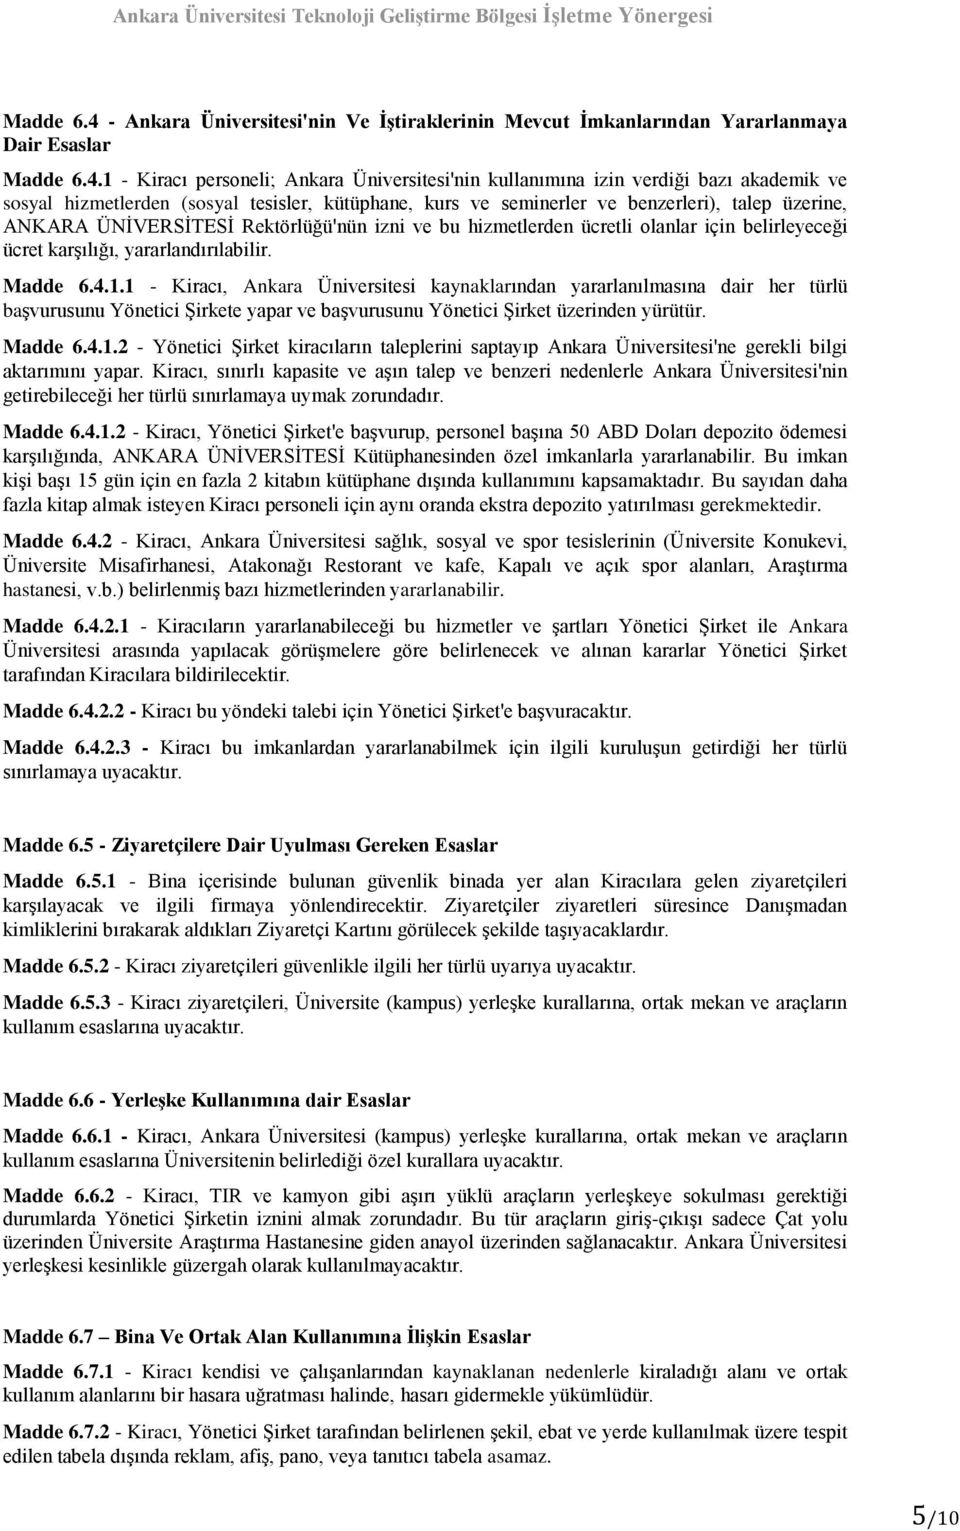 1 - Kiracı personeli; Ankara Üniversitesi'nin kullanımına izin verdiği bazı akademik ve sosyal hizmetlerden (sosyal tesisler, kütüphane, kurs ve seminerler ve benzerleri), talep üzerine, ANKARA